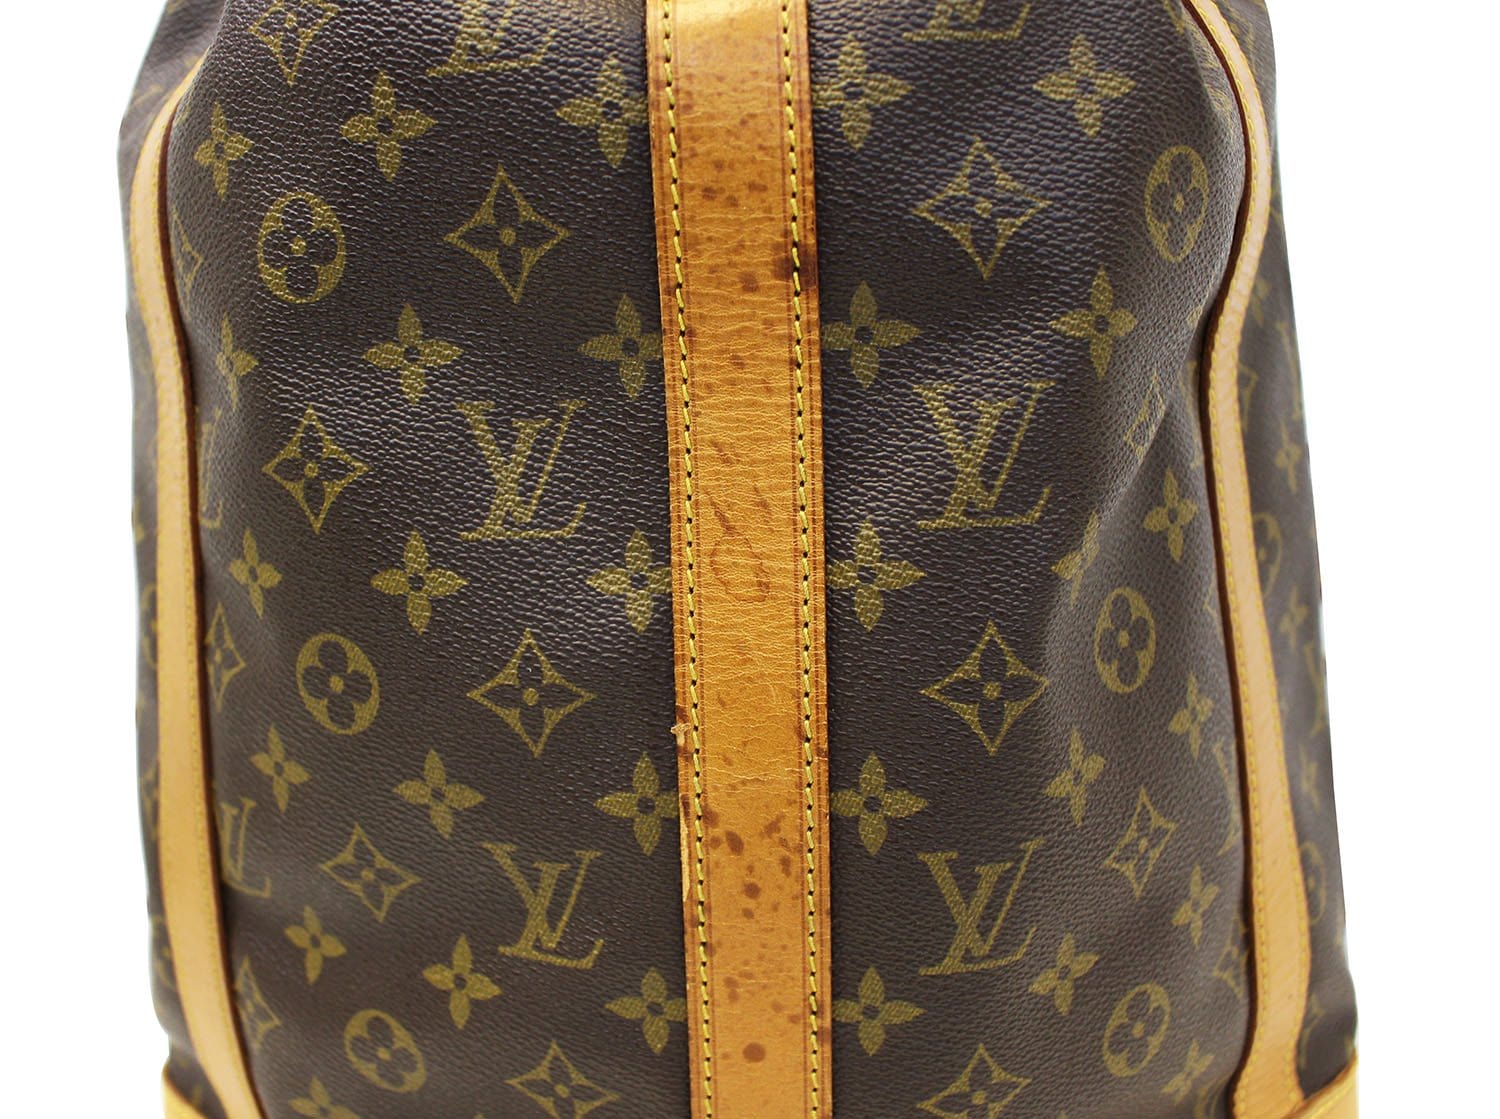 Louis Vuitton Monogram Canvas Randonnee GM Bag – Just Gorgeous